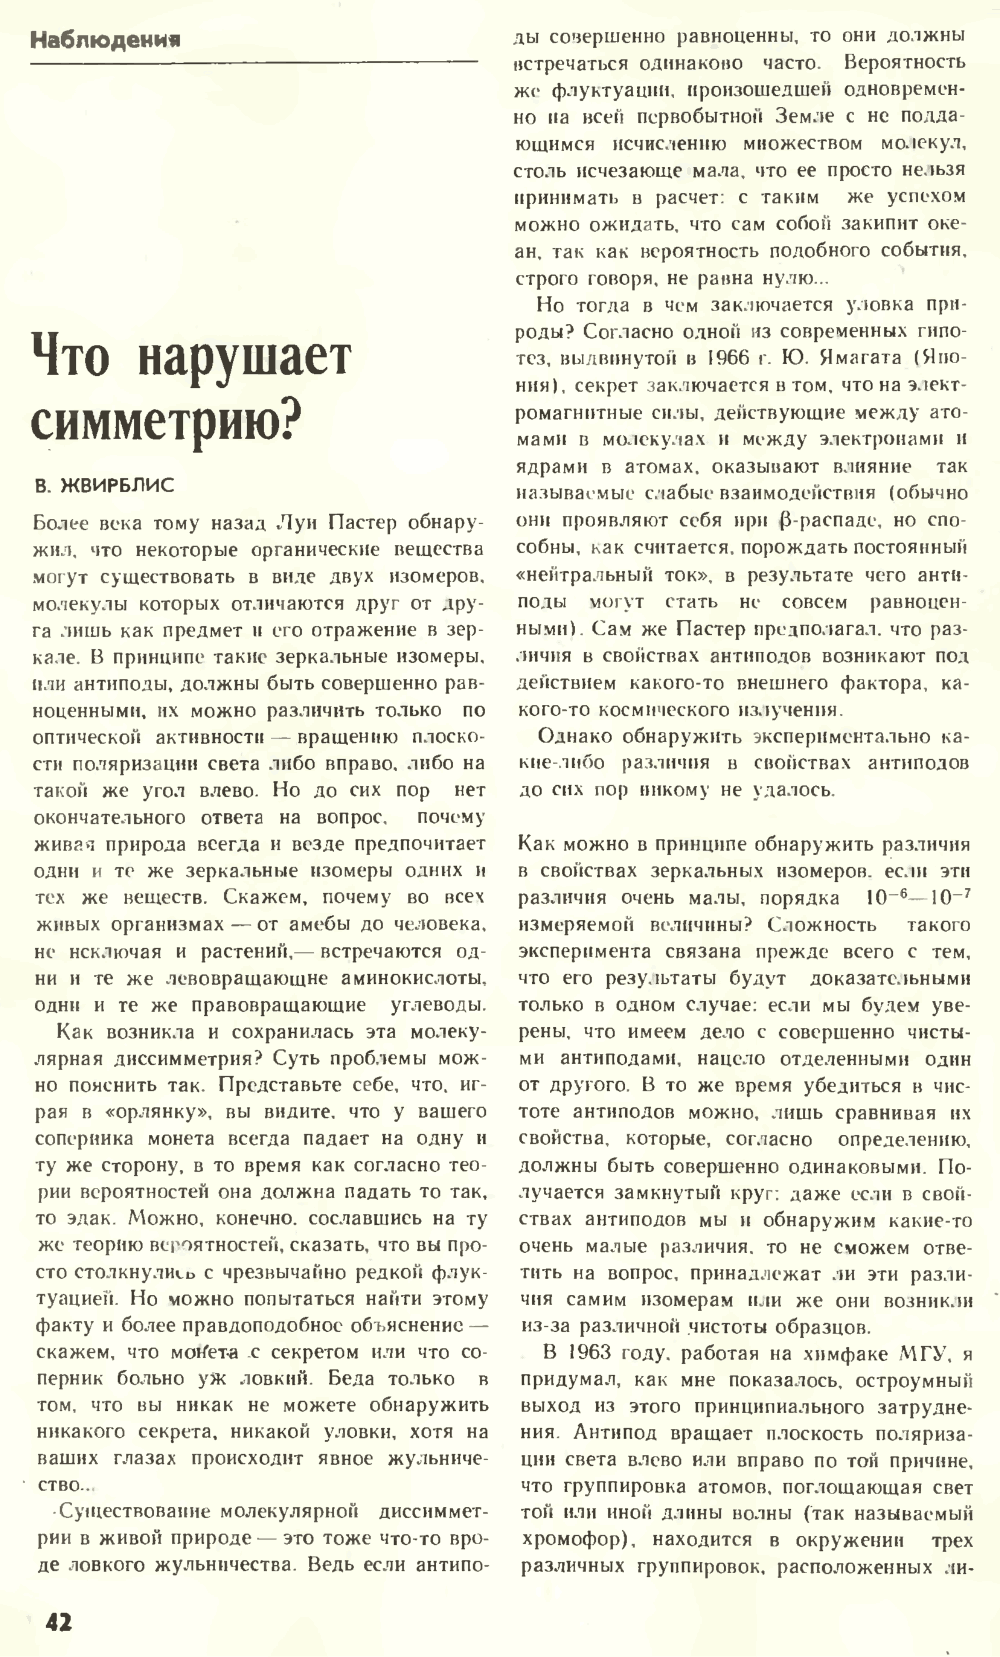 Что нарушает симметрию? В.Е. Жвирблис. Химия и жизнь, 1977, №12, с.42-49. Фотокопия №1